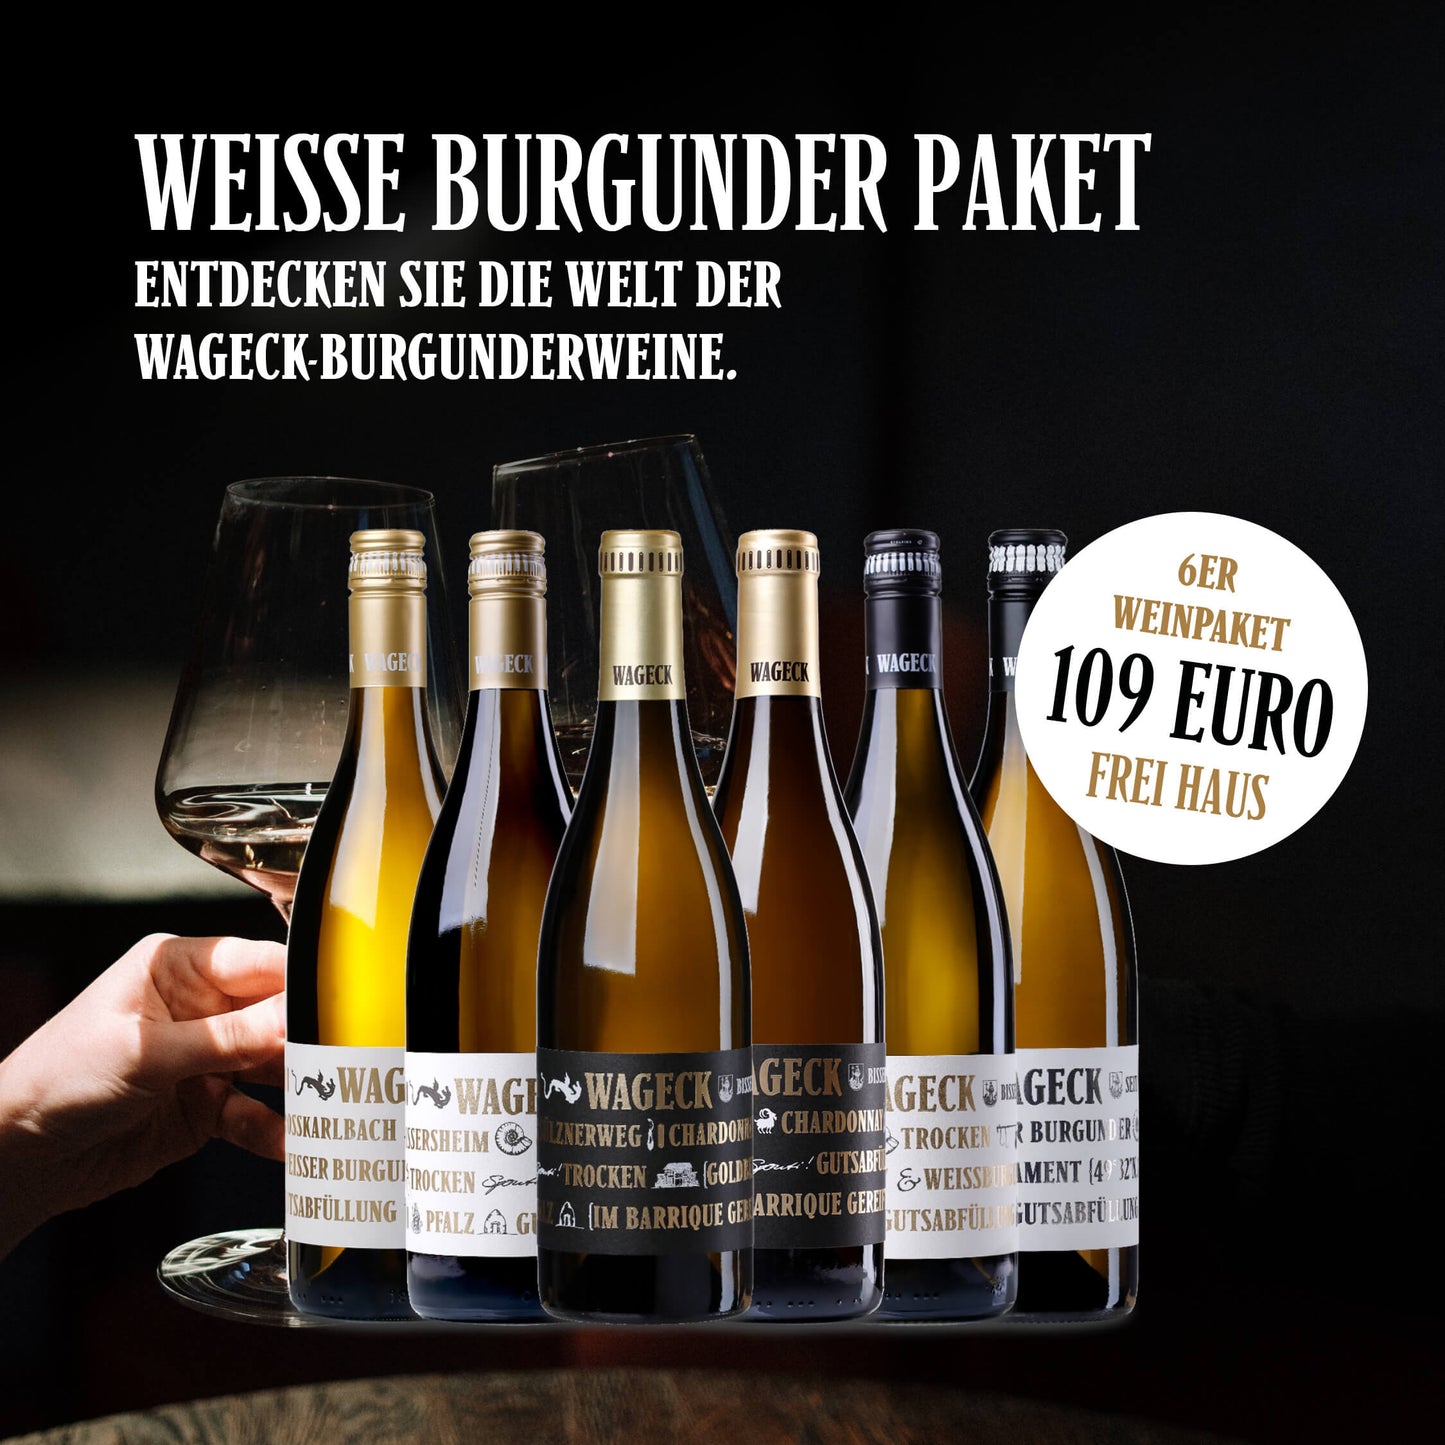 Weisse Burgunder Paket